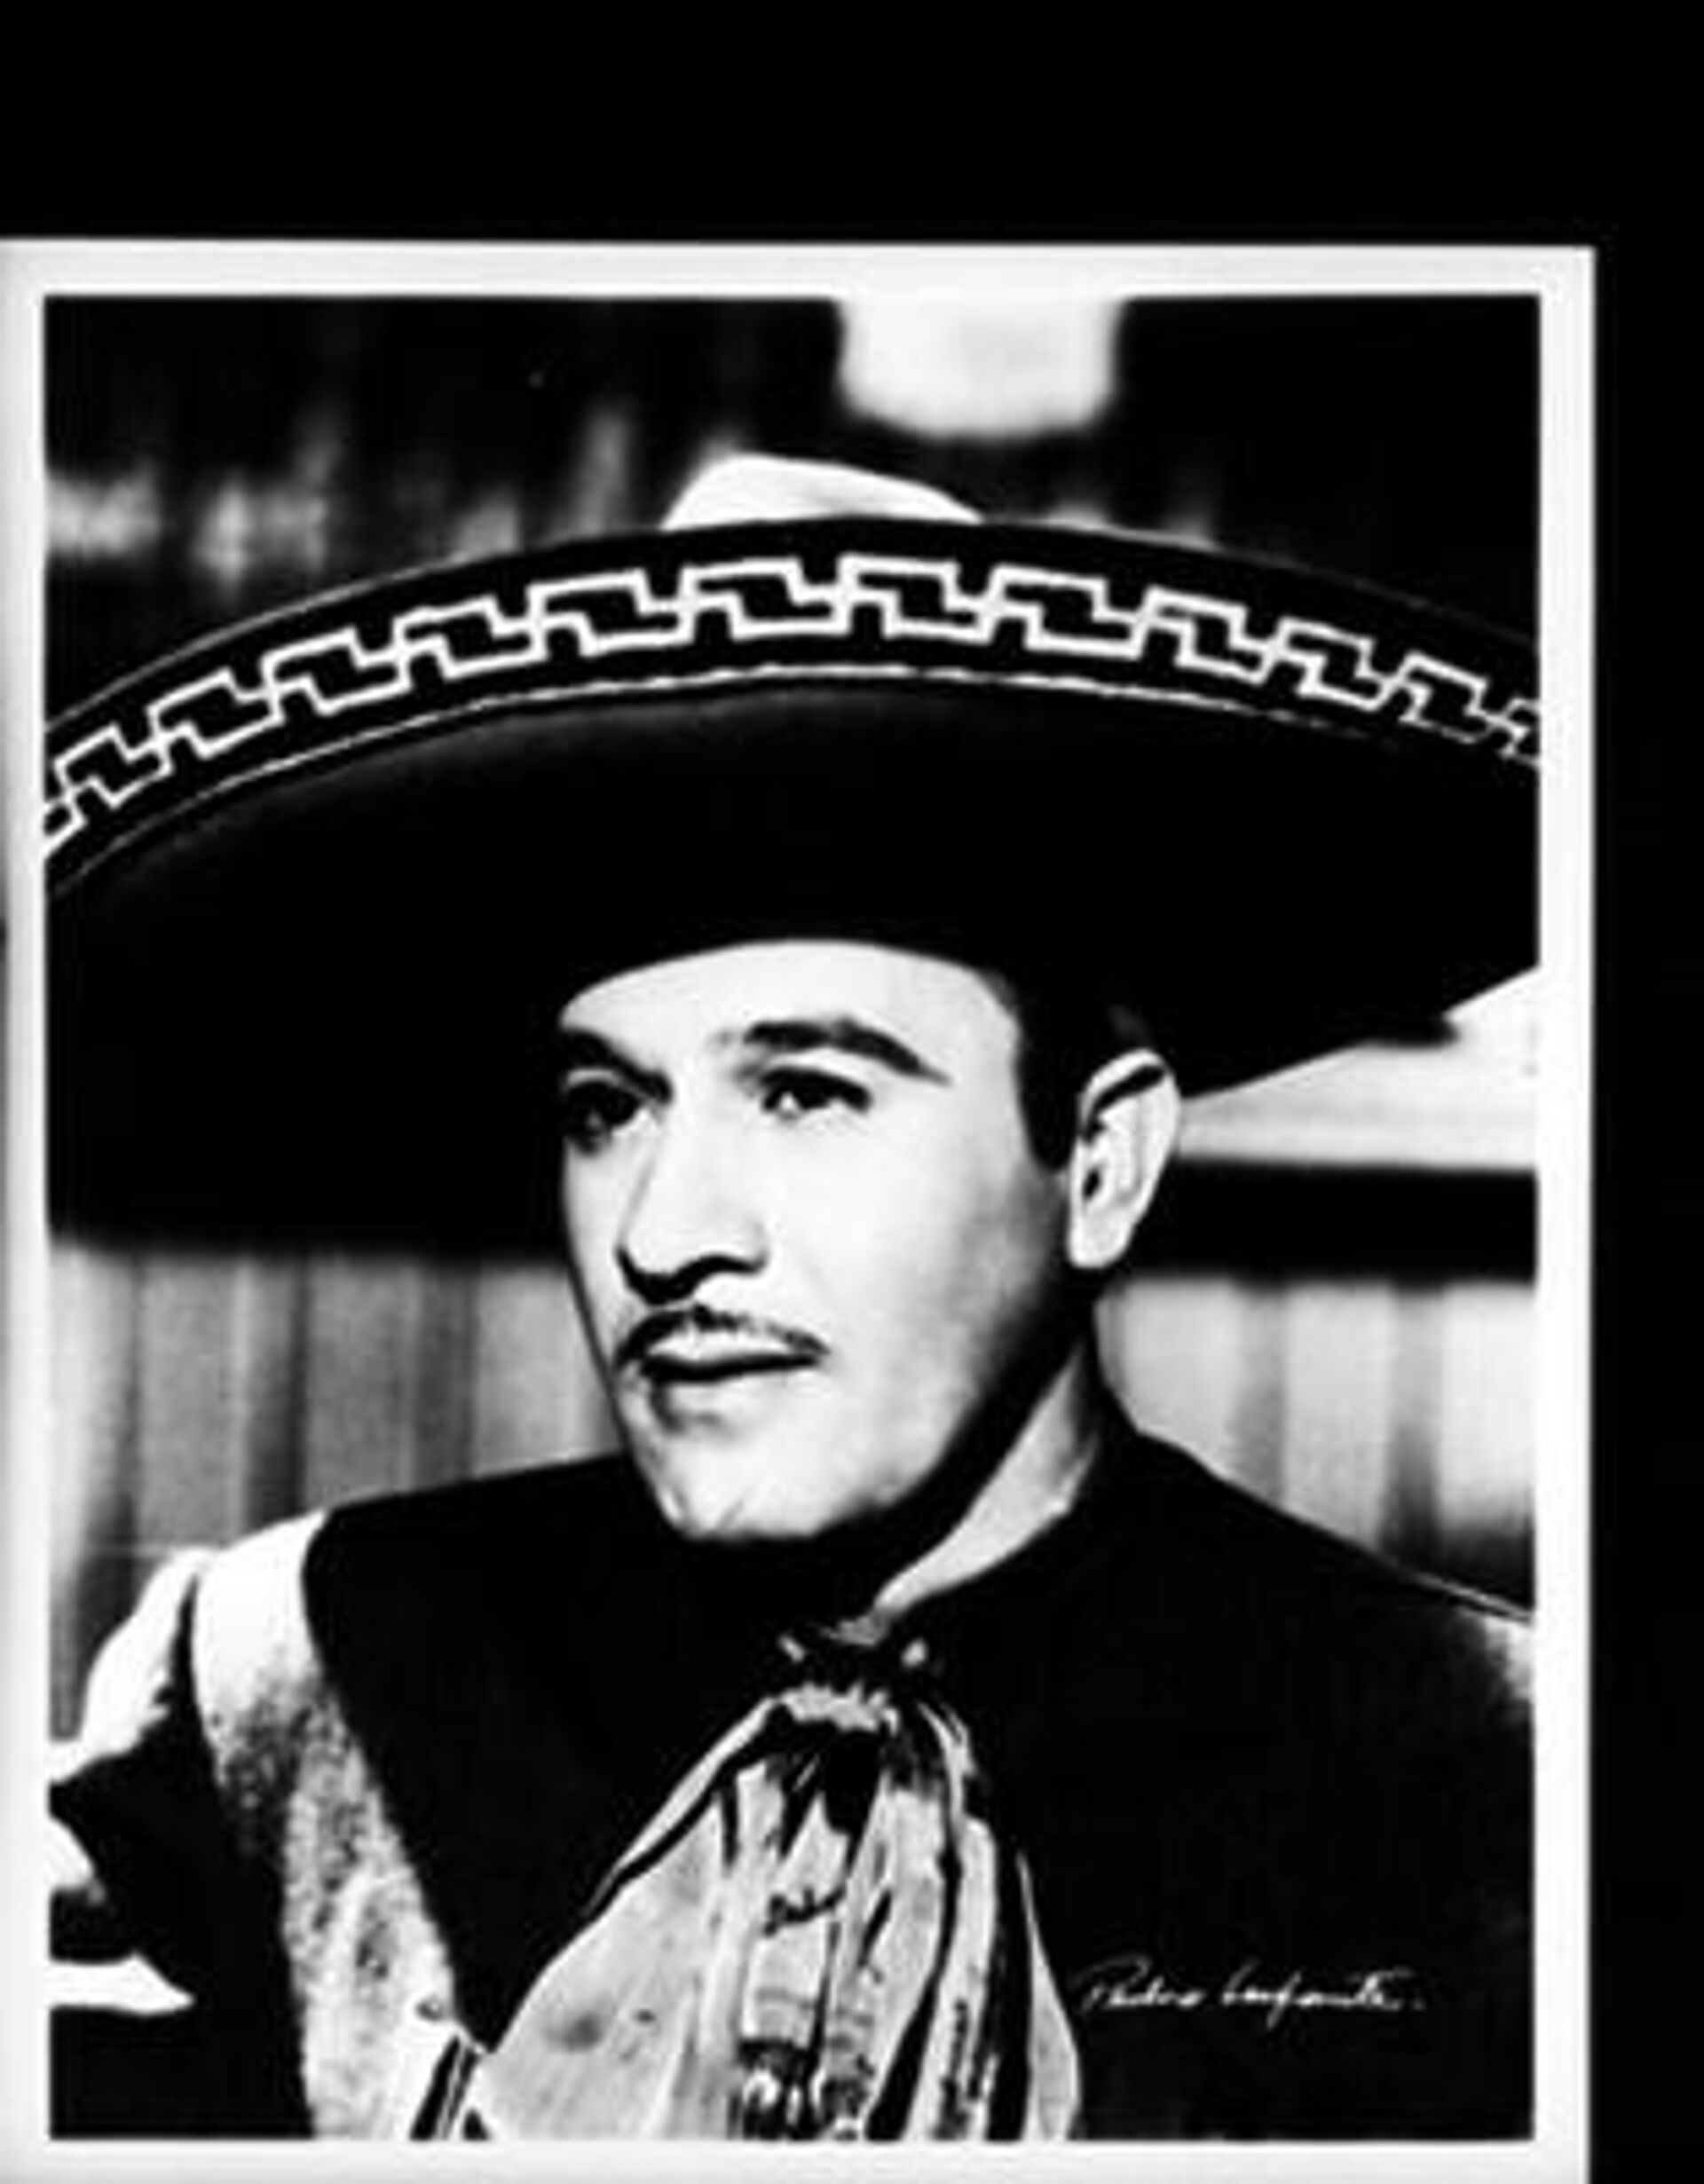 Pedro Infante, actor reconocido de la época de oro del cine mexicano. - Sputnik Mundo, 1920, 01.03.2022